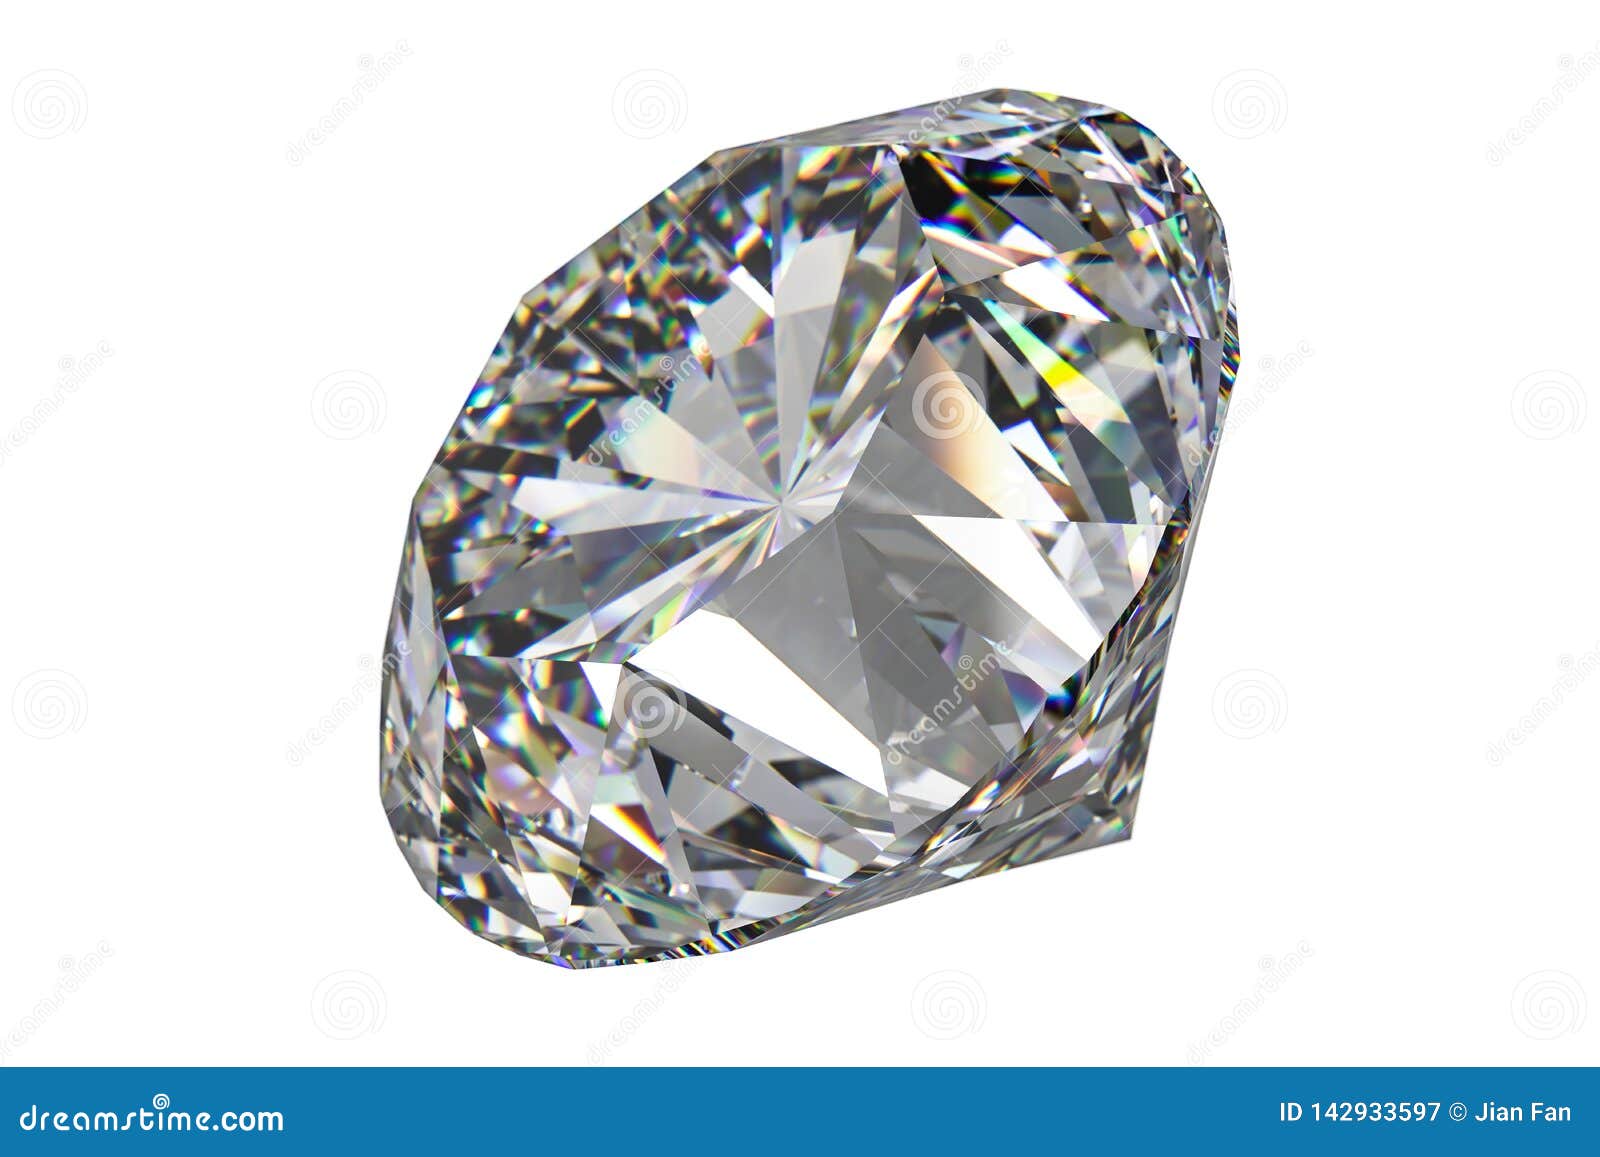 Hình ảnh kim cương - Kim cương luôn là mơ ước của mọi người, một viên đá quý với vẻ đẹp lung linh. Để cảm nhận được vẻ đẹp của kim cương, chúng ta không cần phải sở hữu một viên kim cương đắt tiền. Cùng khám phá hình ảnh về kim cương để trải nghiệm vẻ đẹp như thật của nó.